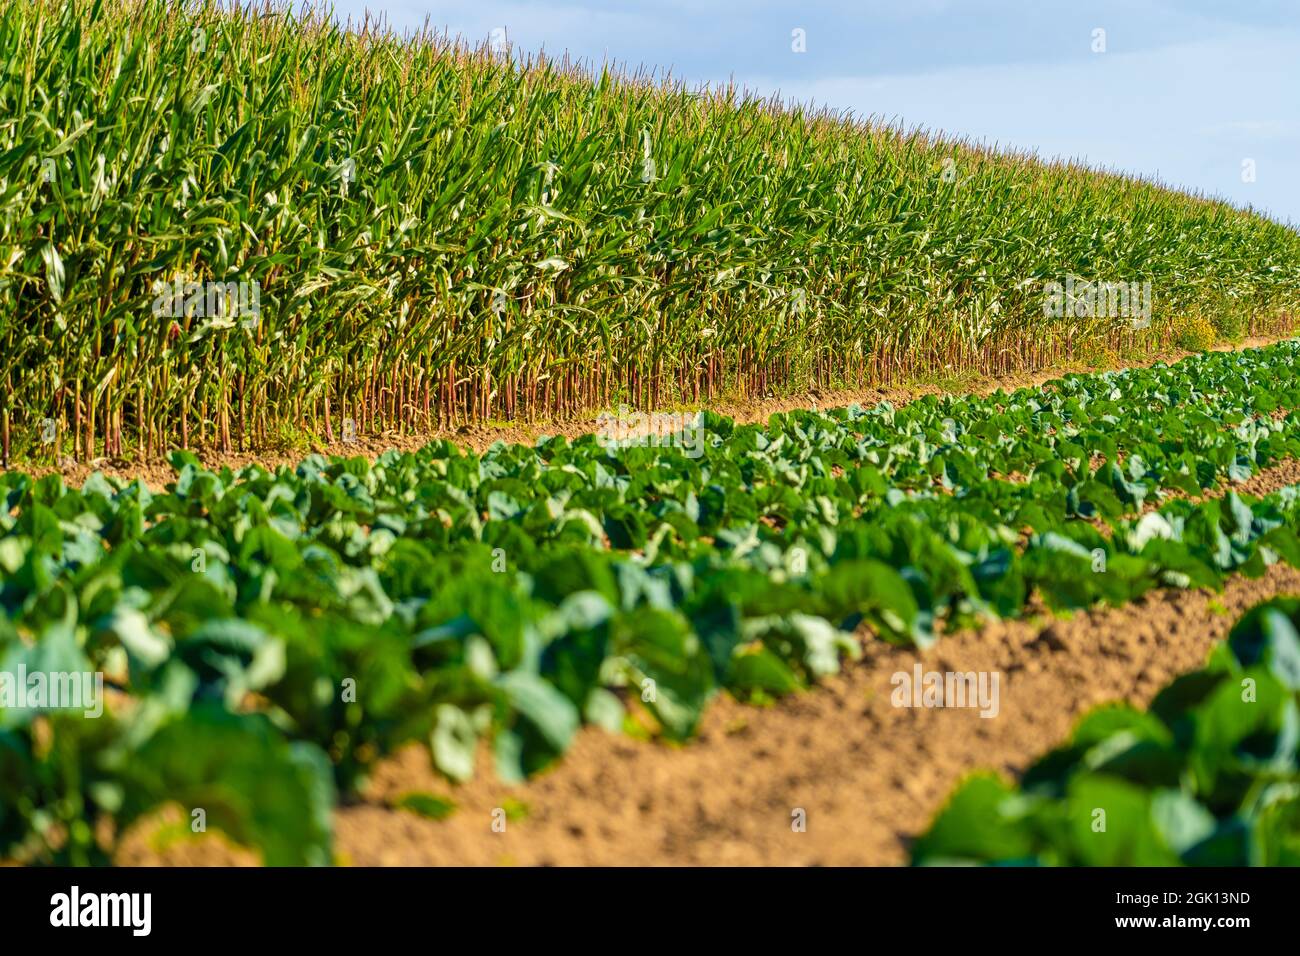 Landwirtschaft und Landwirtschaft, Ackerland in der Region Bretagne. Grünes Maisfeld in Nordfrankreich in der Bretagne. Getreide und Futterpflanzen Mais Stockfoto